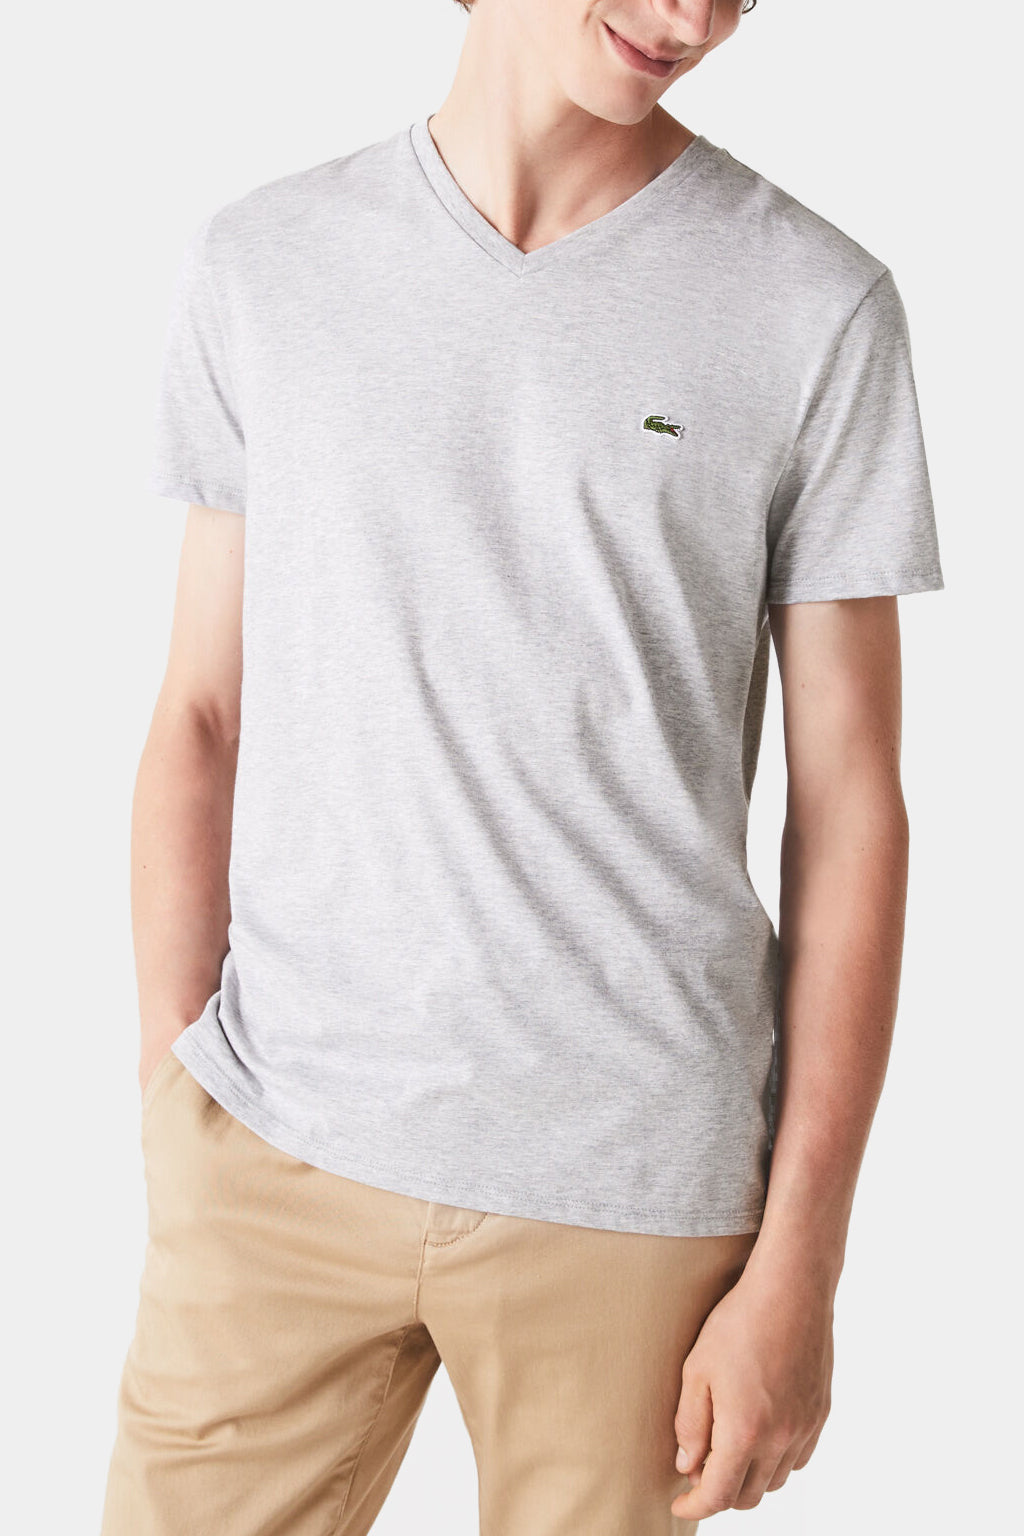 Lacoste V-neck Pima Cotton Jersey T-shirt